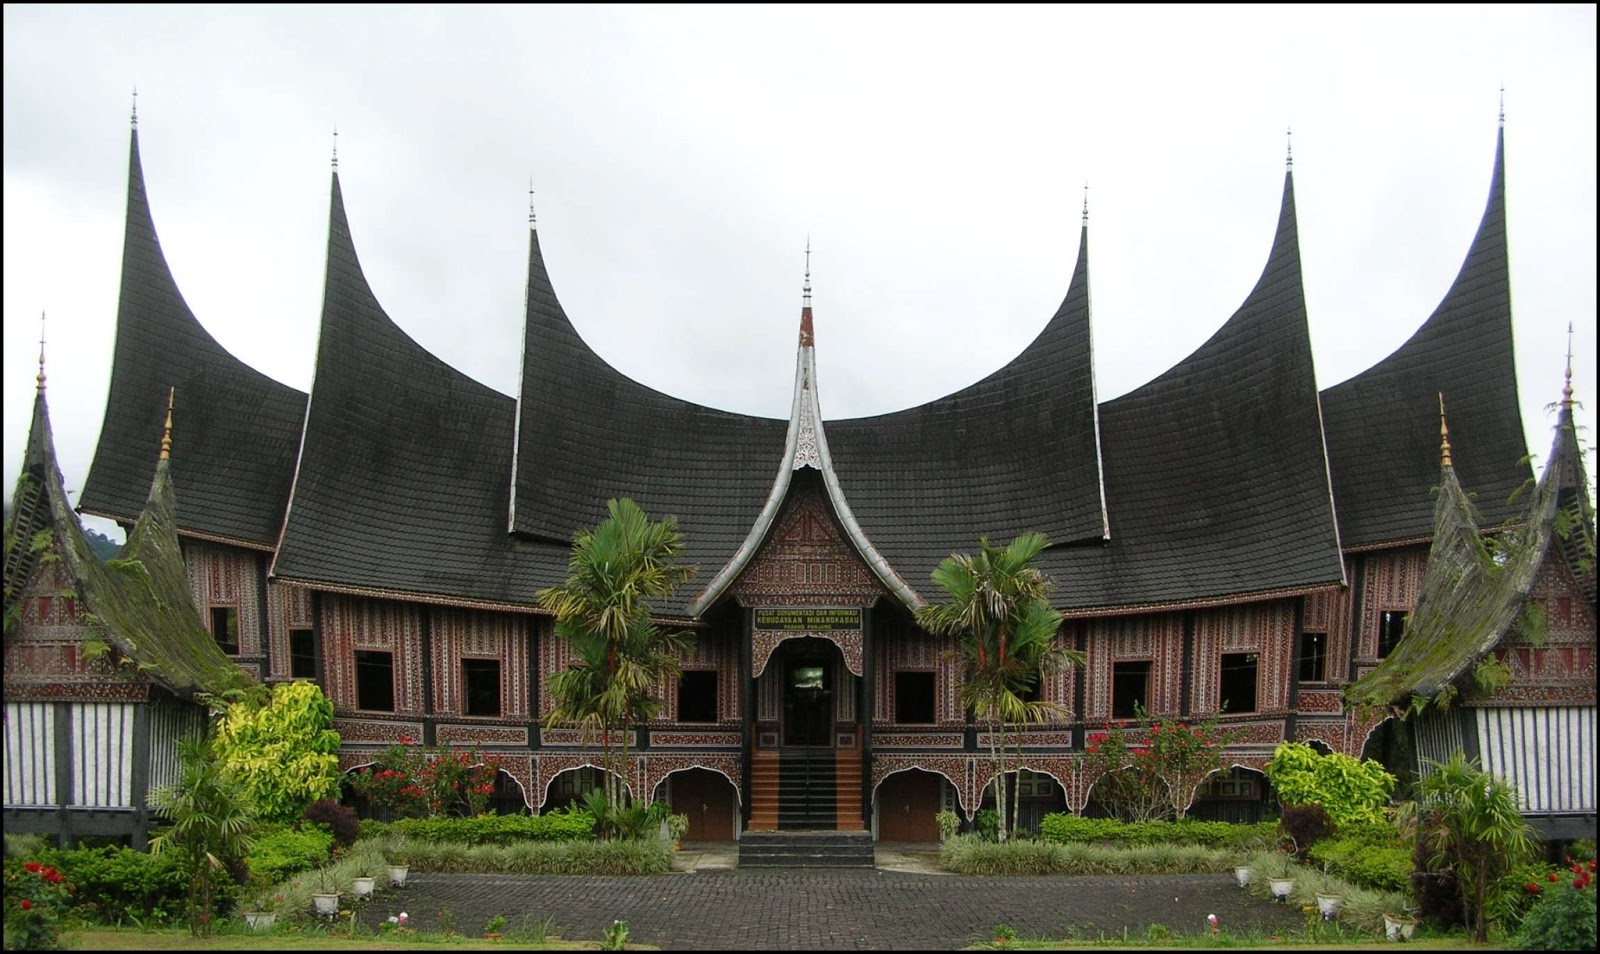 Download this Rumah Banjar Adat Kalimantan Selatan picture